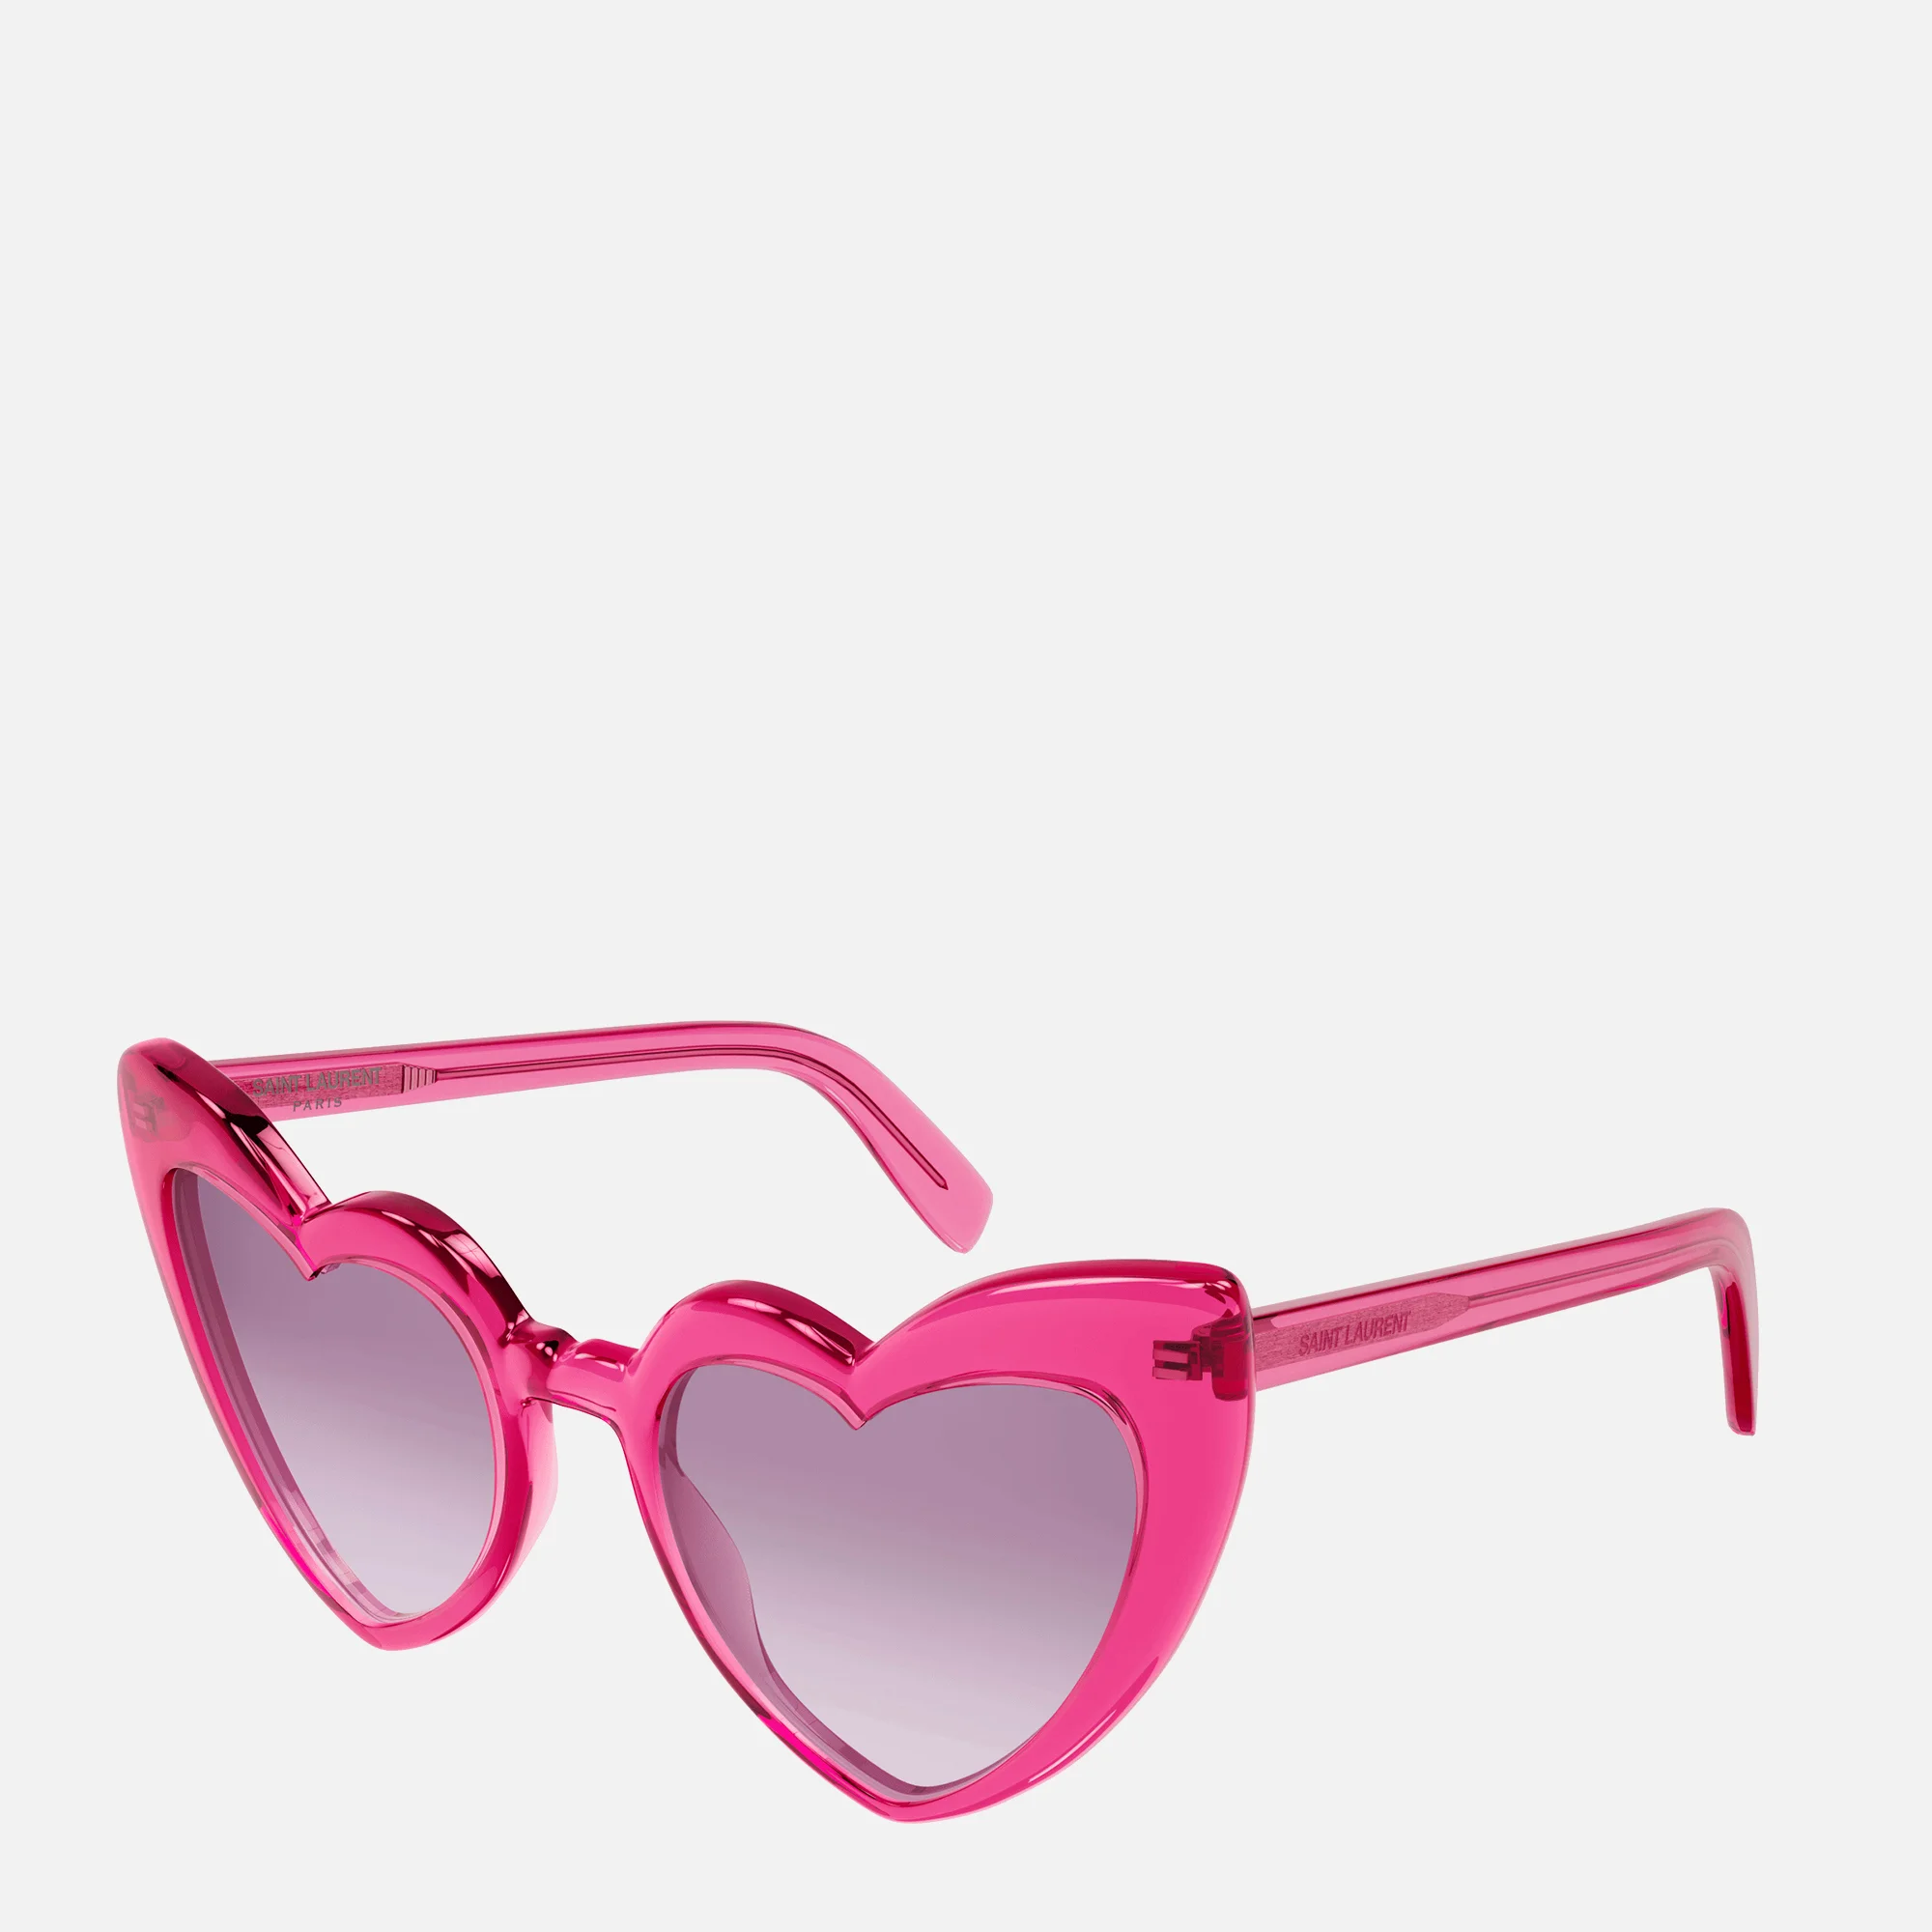 Saint Laurent Women's Loulou Heart Shaped Sunglasses - Pink/Violet Image 1